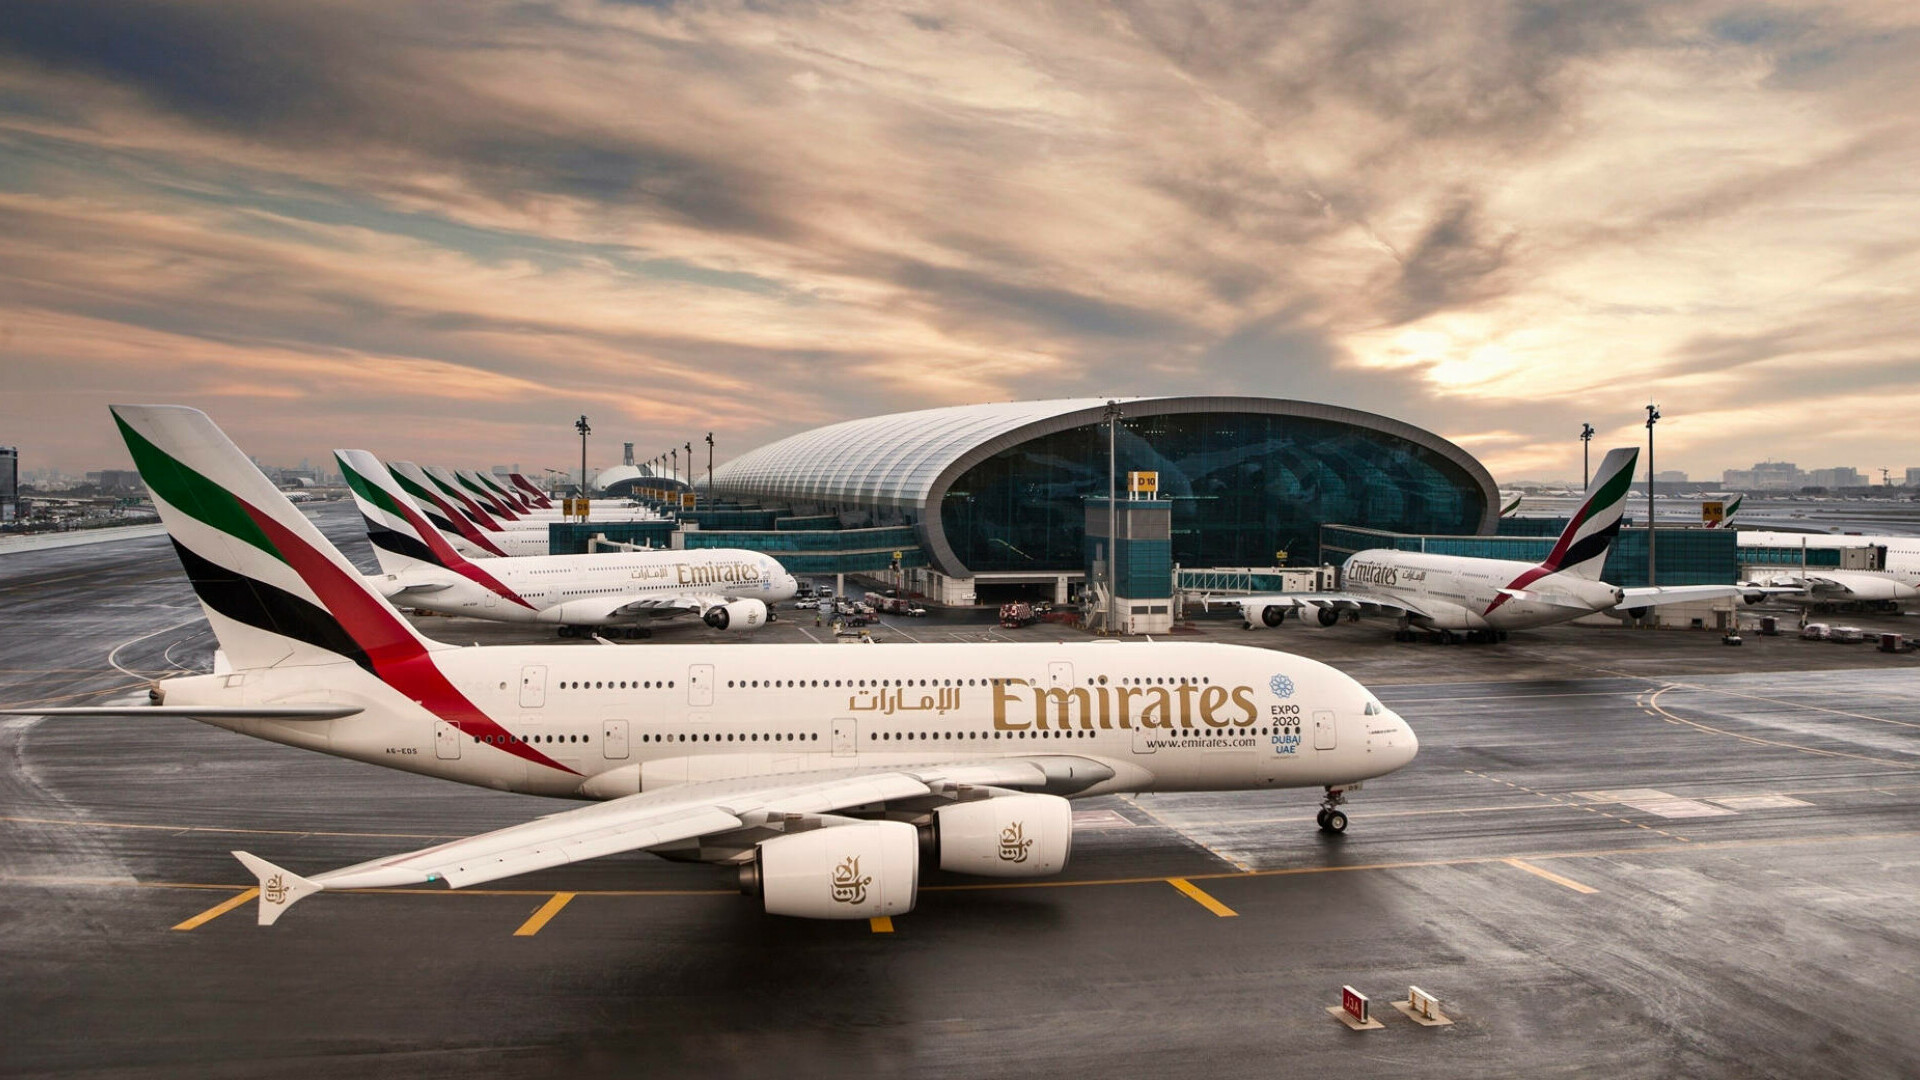 Aeroportul Internaţional Dubai